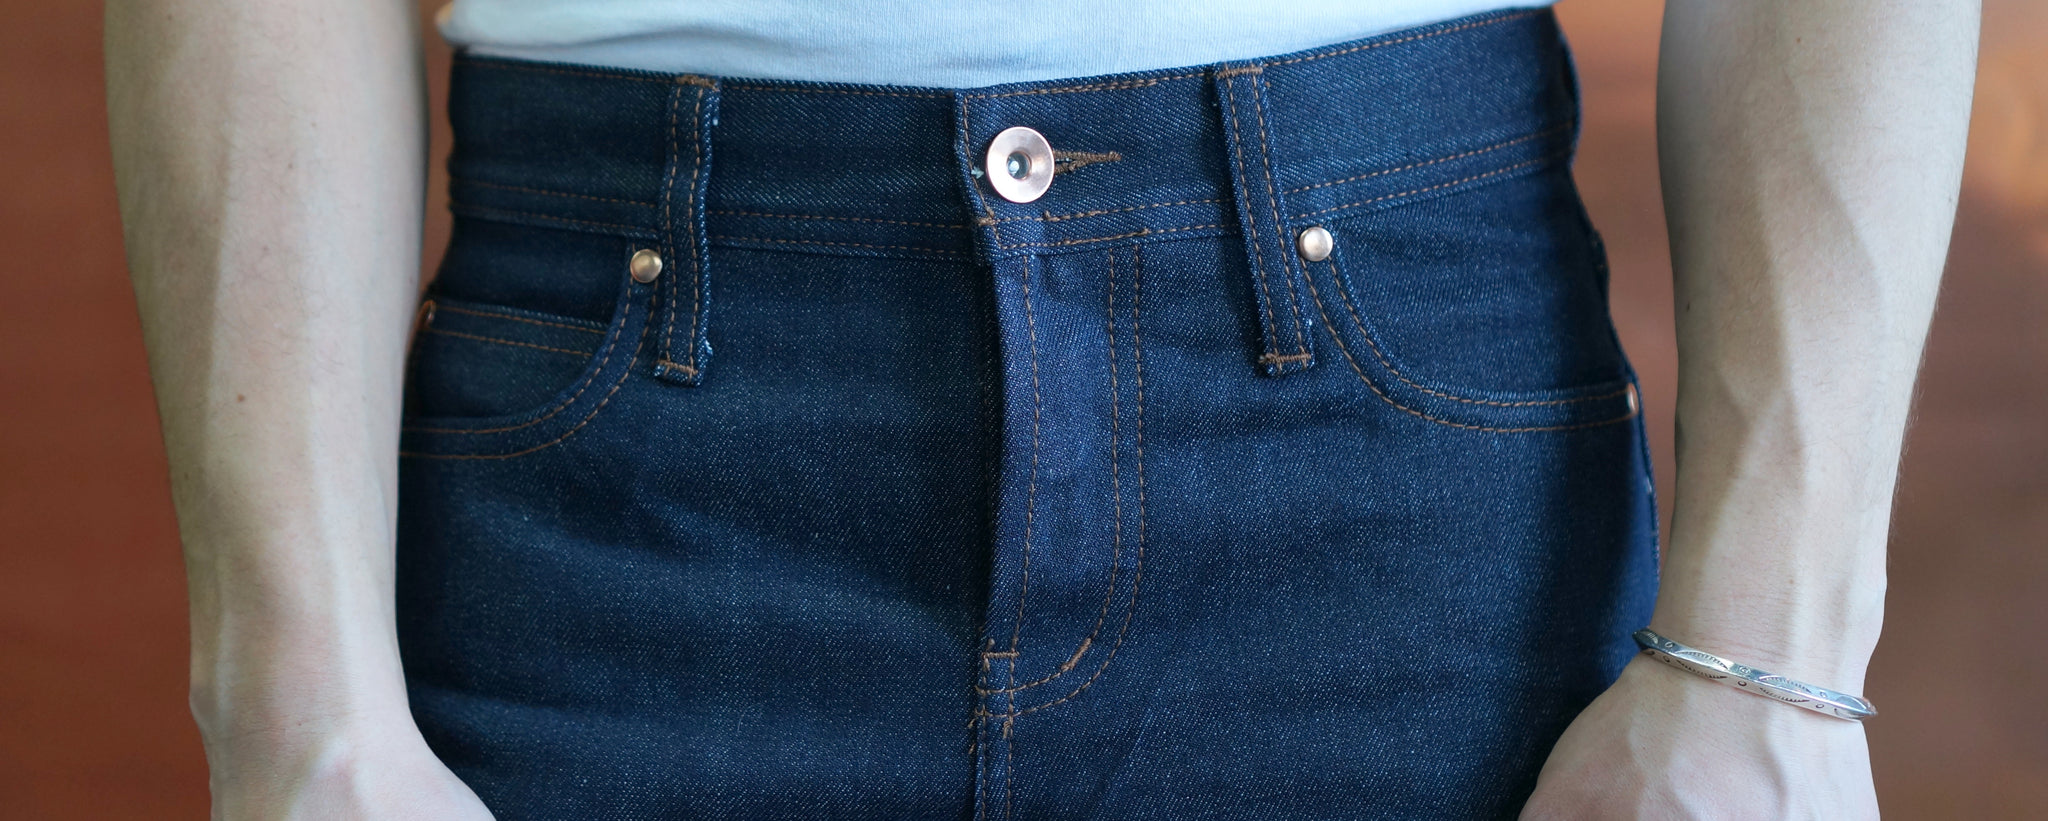 unwashed denim jeans